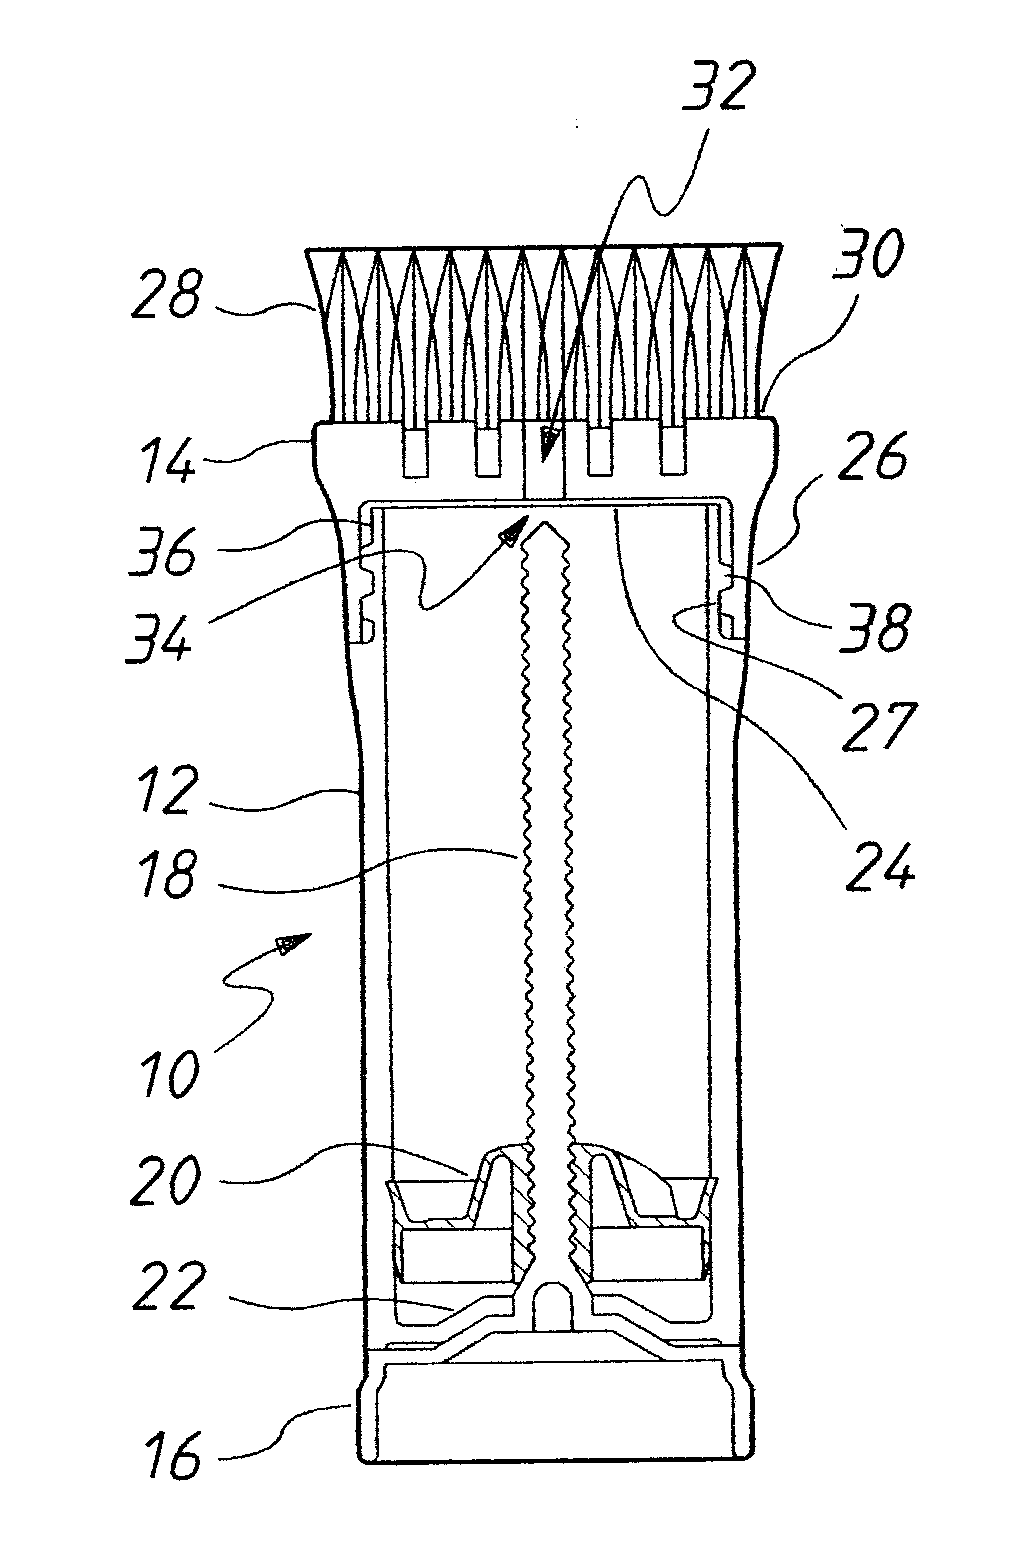 Dispenser and Brush Apparatus